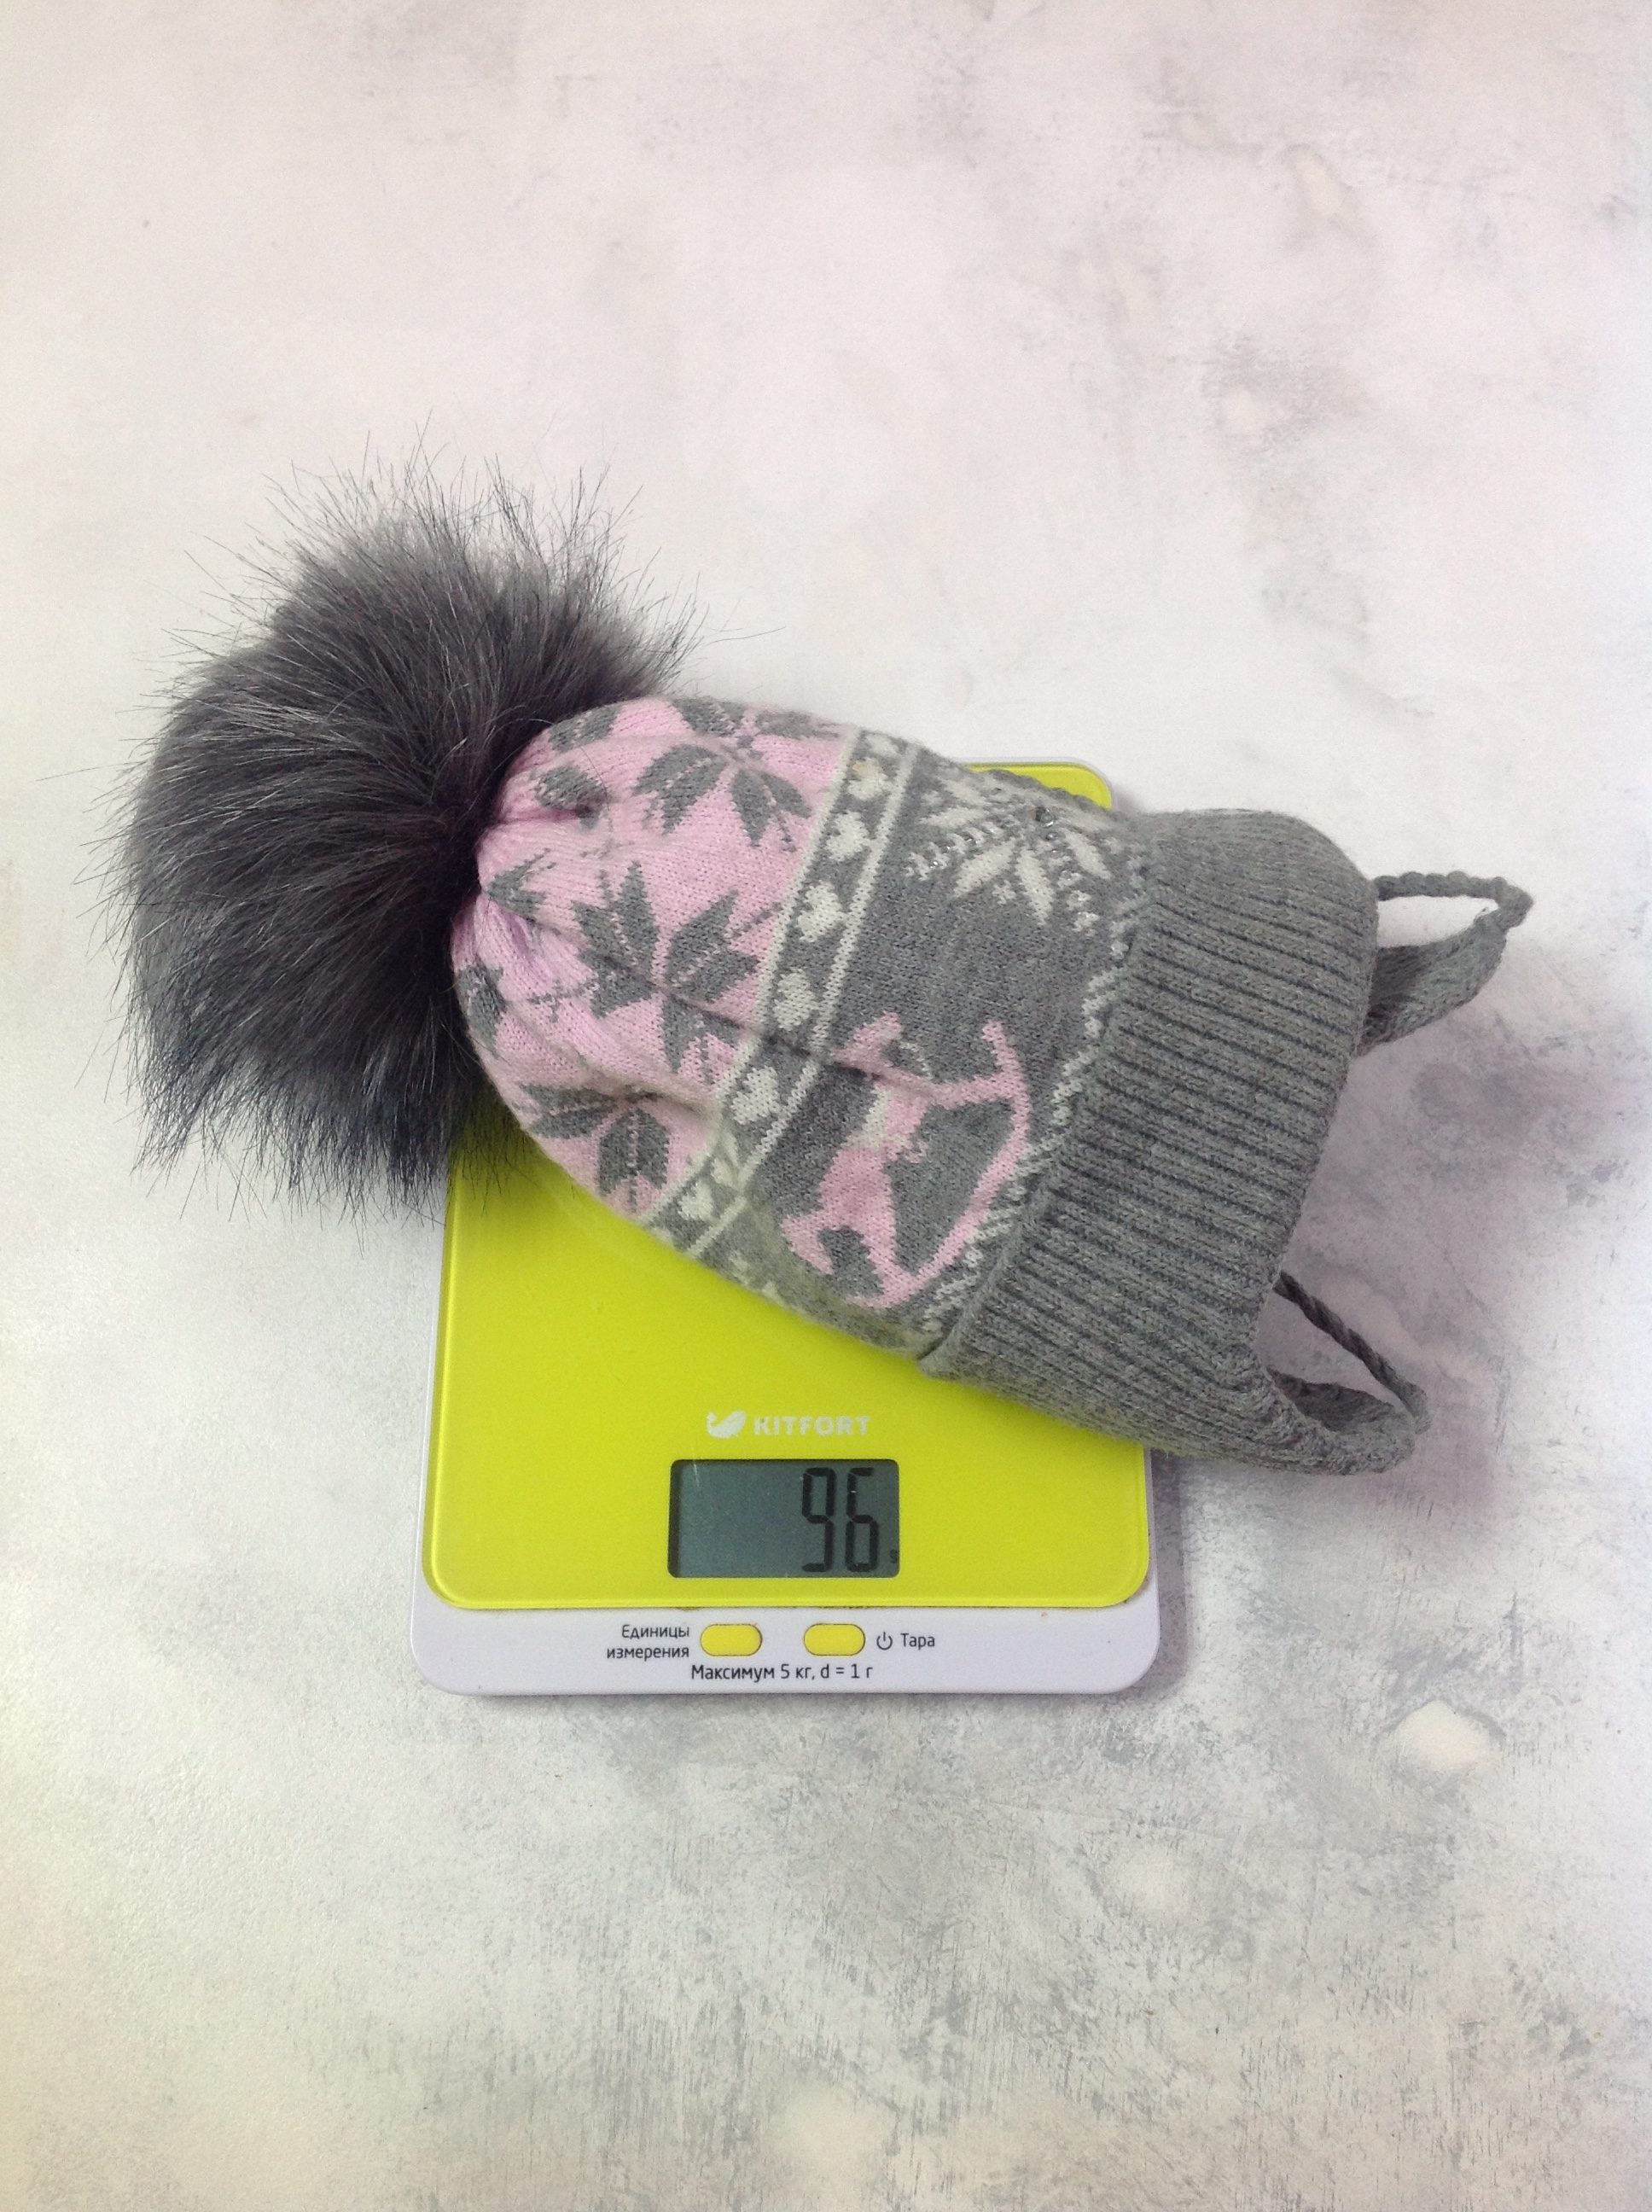 Ponponlu bir kışlık şapka 2 yaşındaki bir çocuk için ne kadar ağırlığa sahiptir?